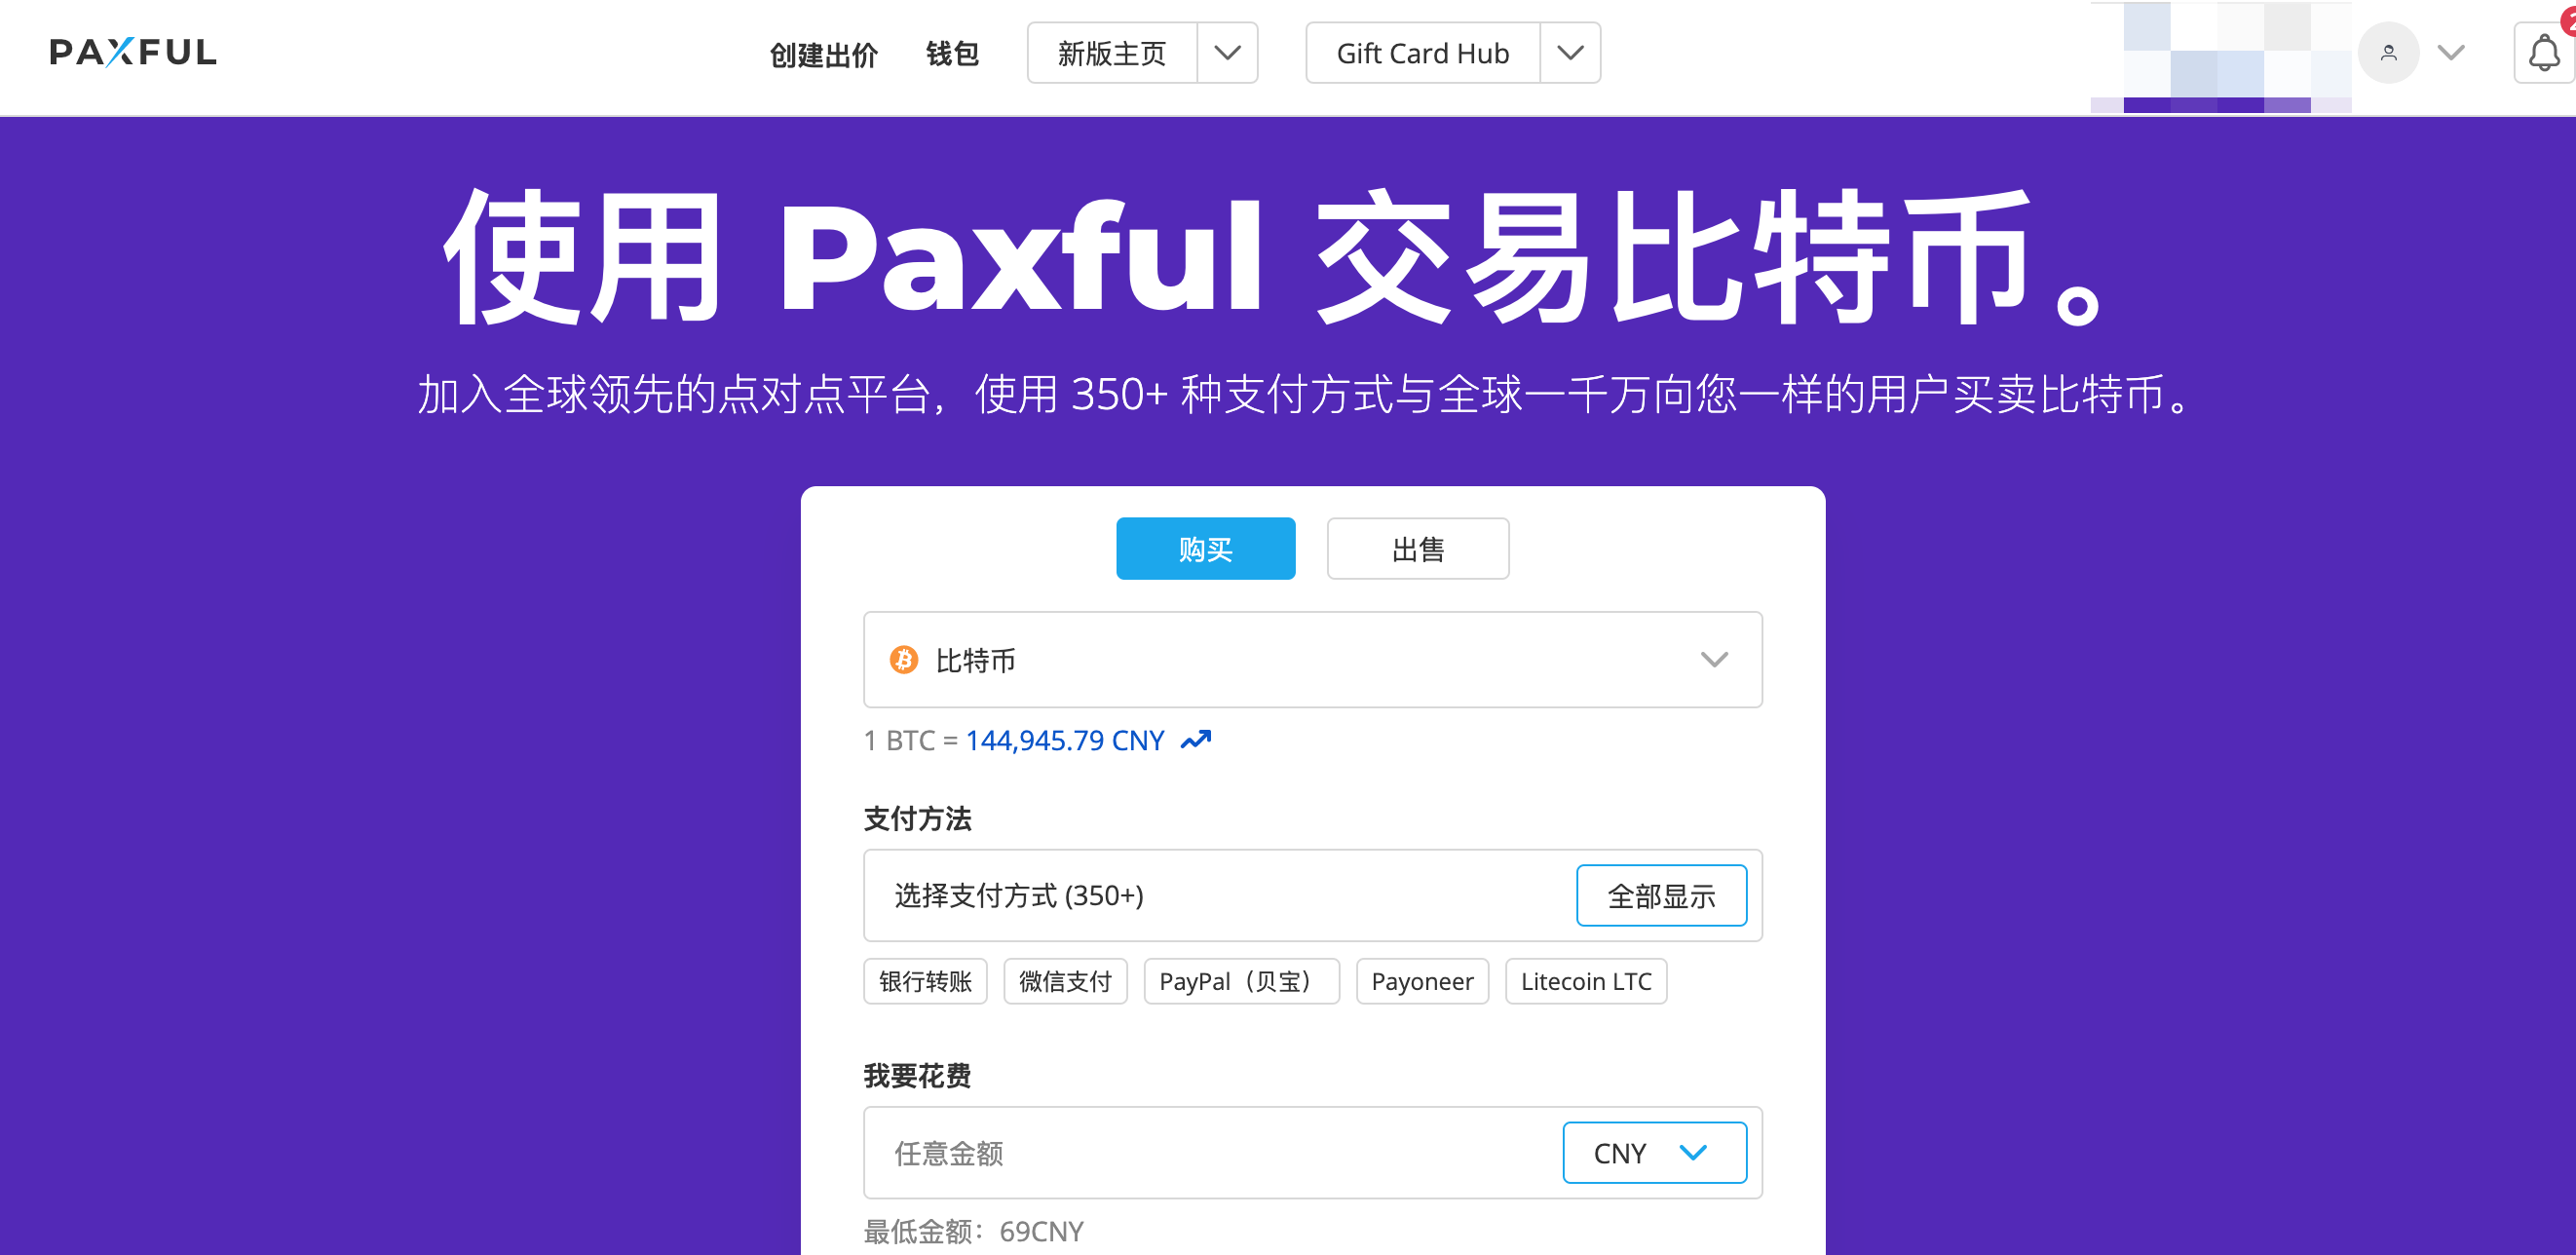 paxful官网地址-整合全球比特币买家和卖家-paxful交易平台-图片2